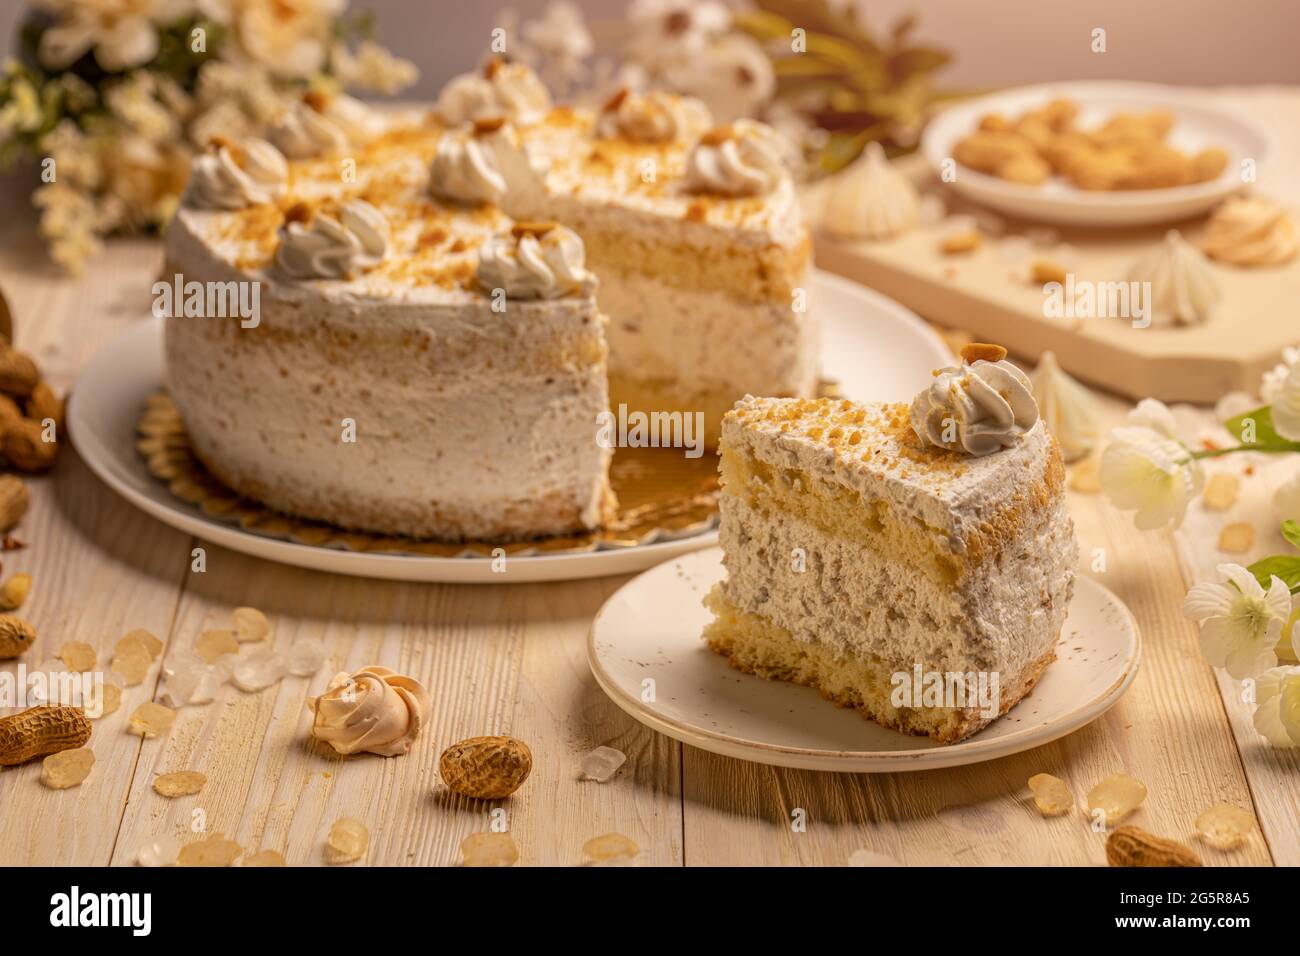 Gâteau rond avec crème fouettée et noix. Une glace est retirée et placée sur une plaque en porcelaine Banque D'Images